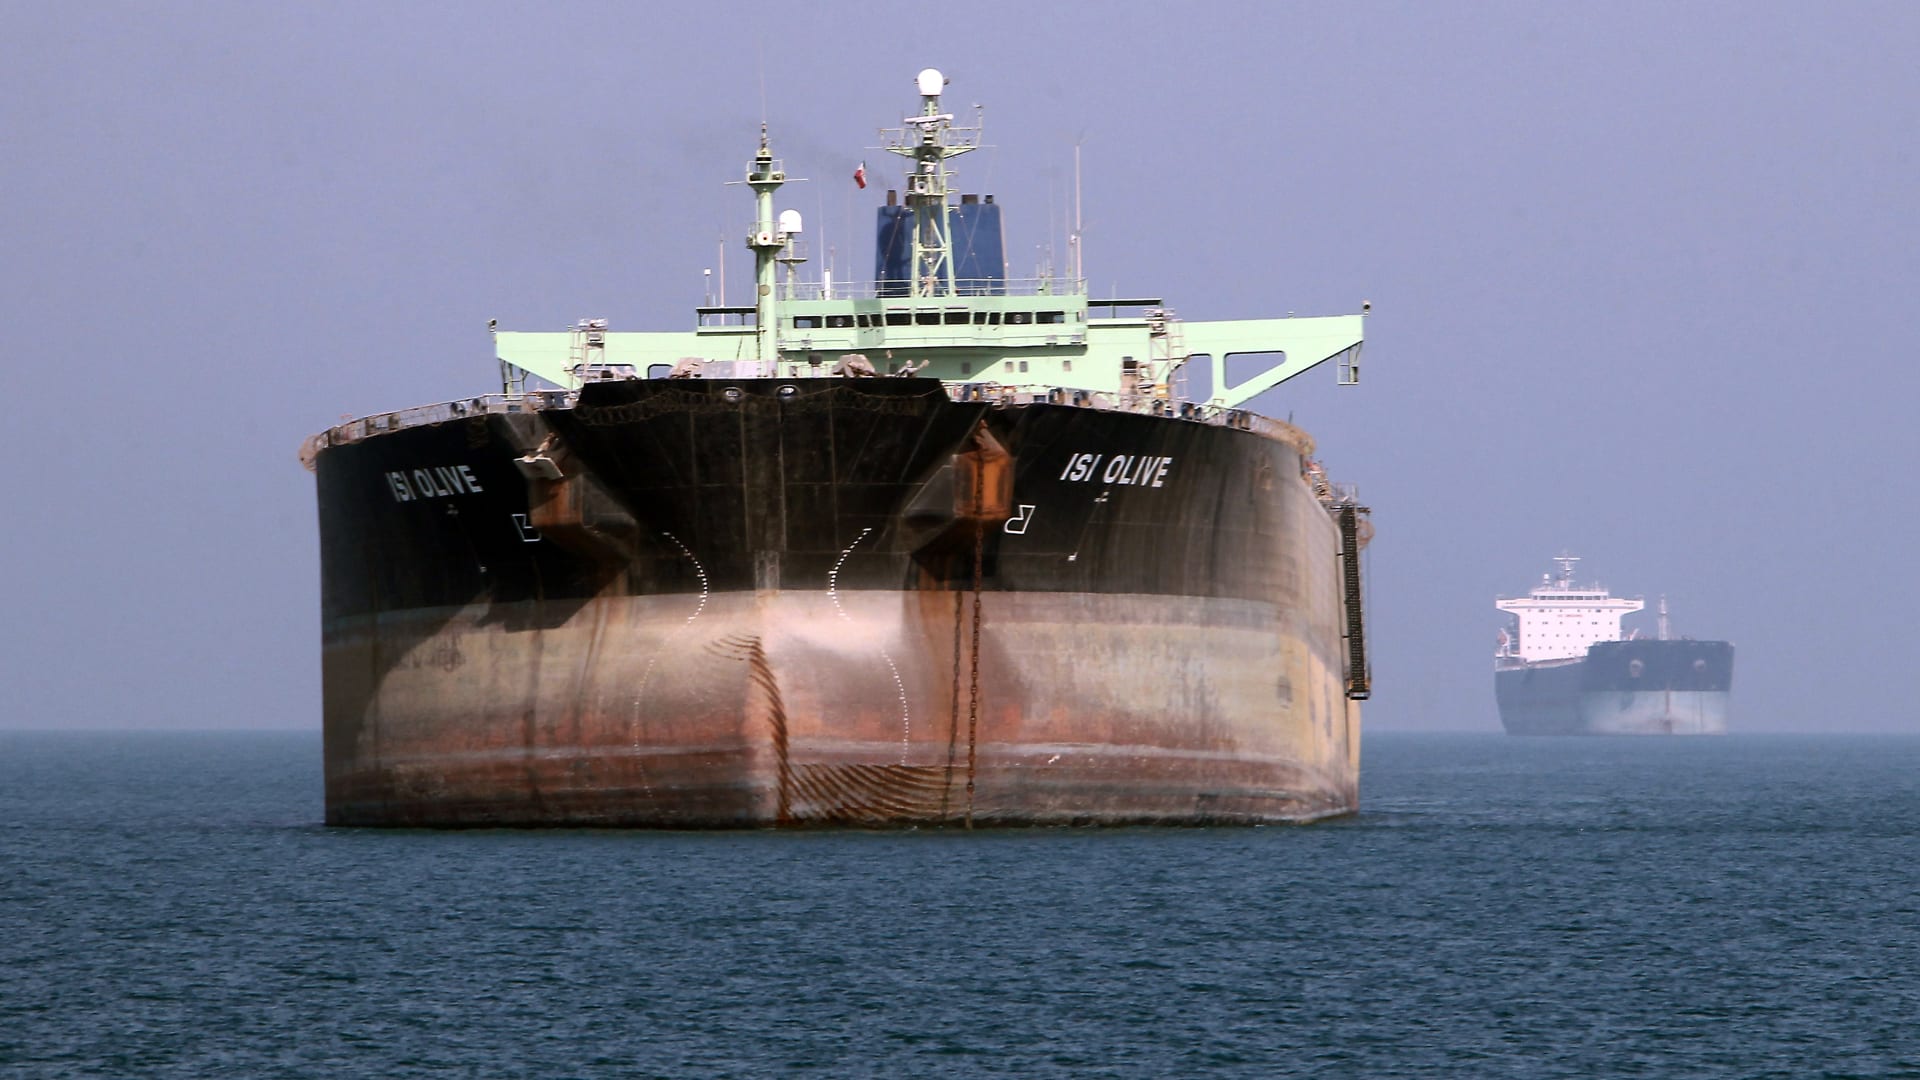 8 دول حصلت على استثناءات أمريكية لمواصلة شراء النفط الإيراني مؤقتا